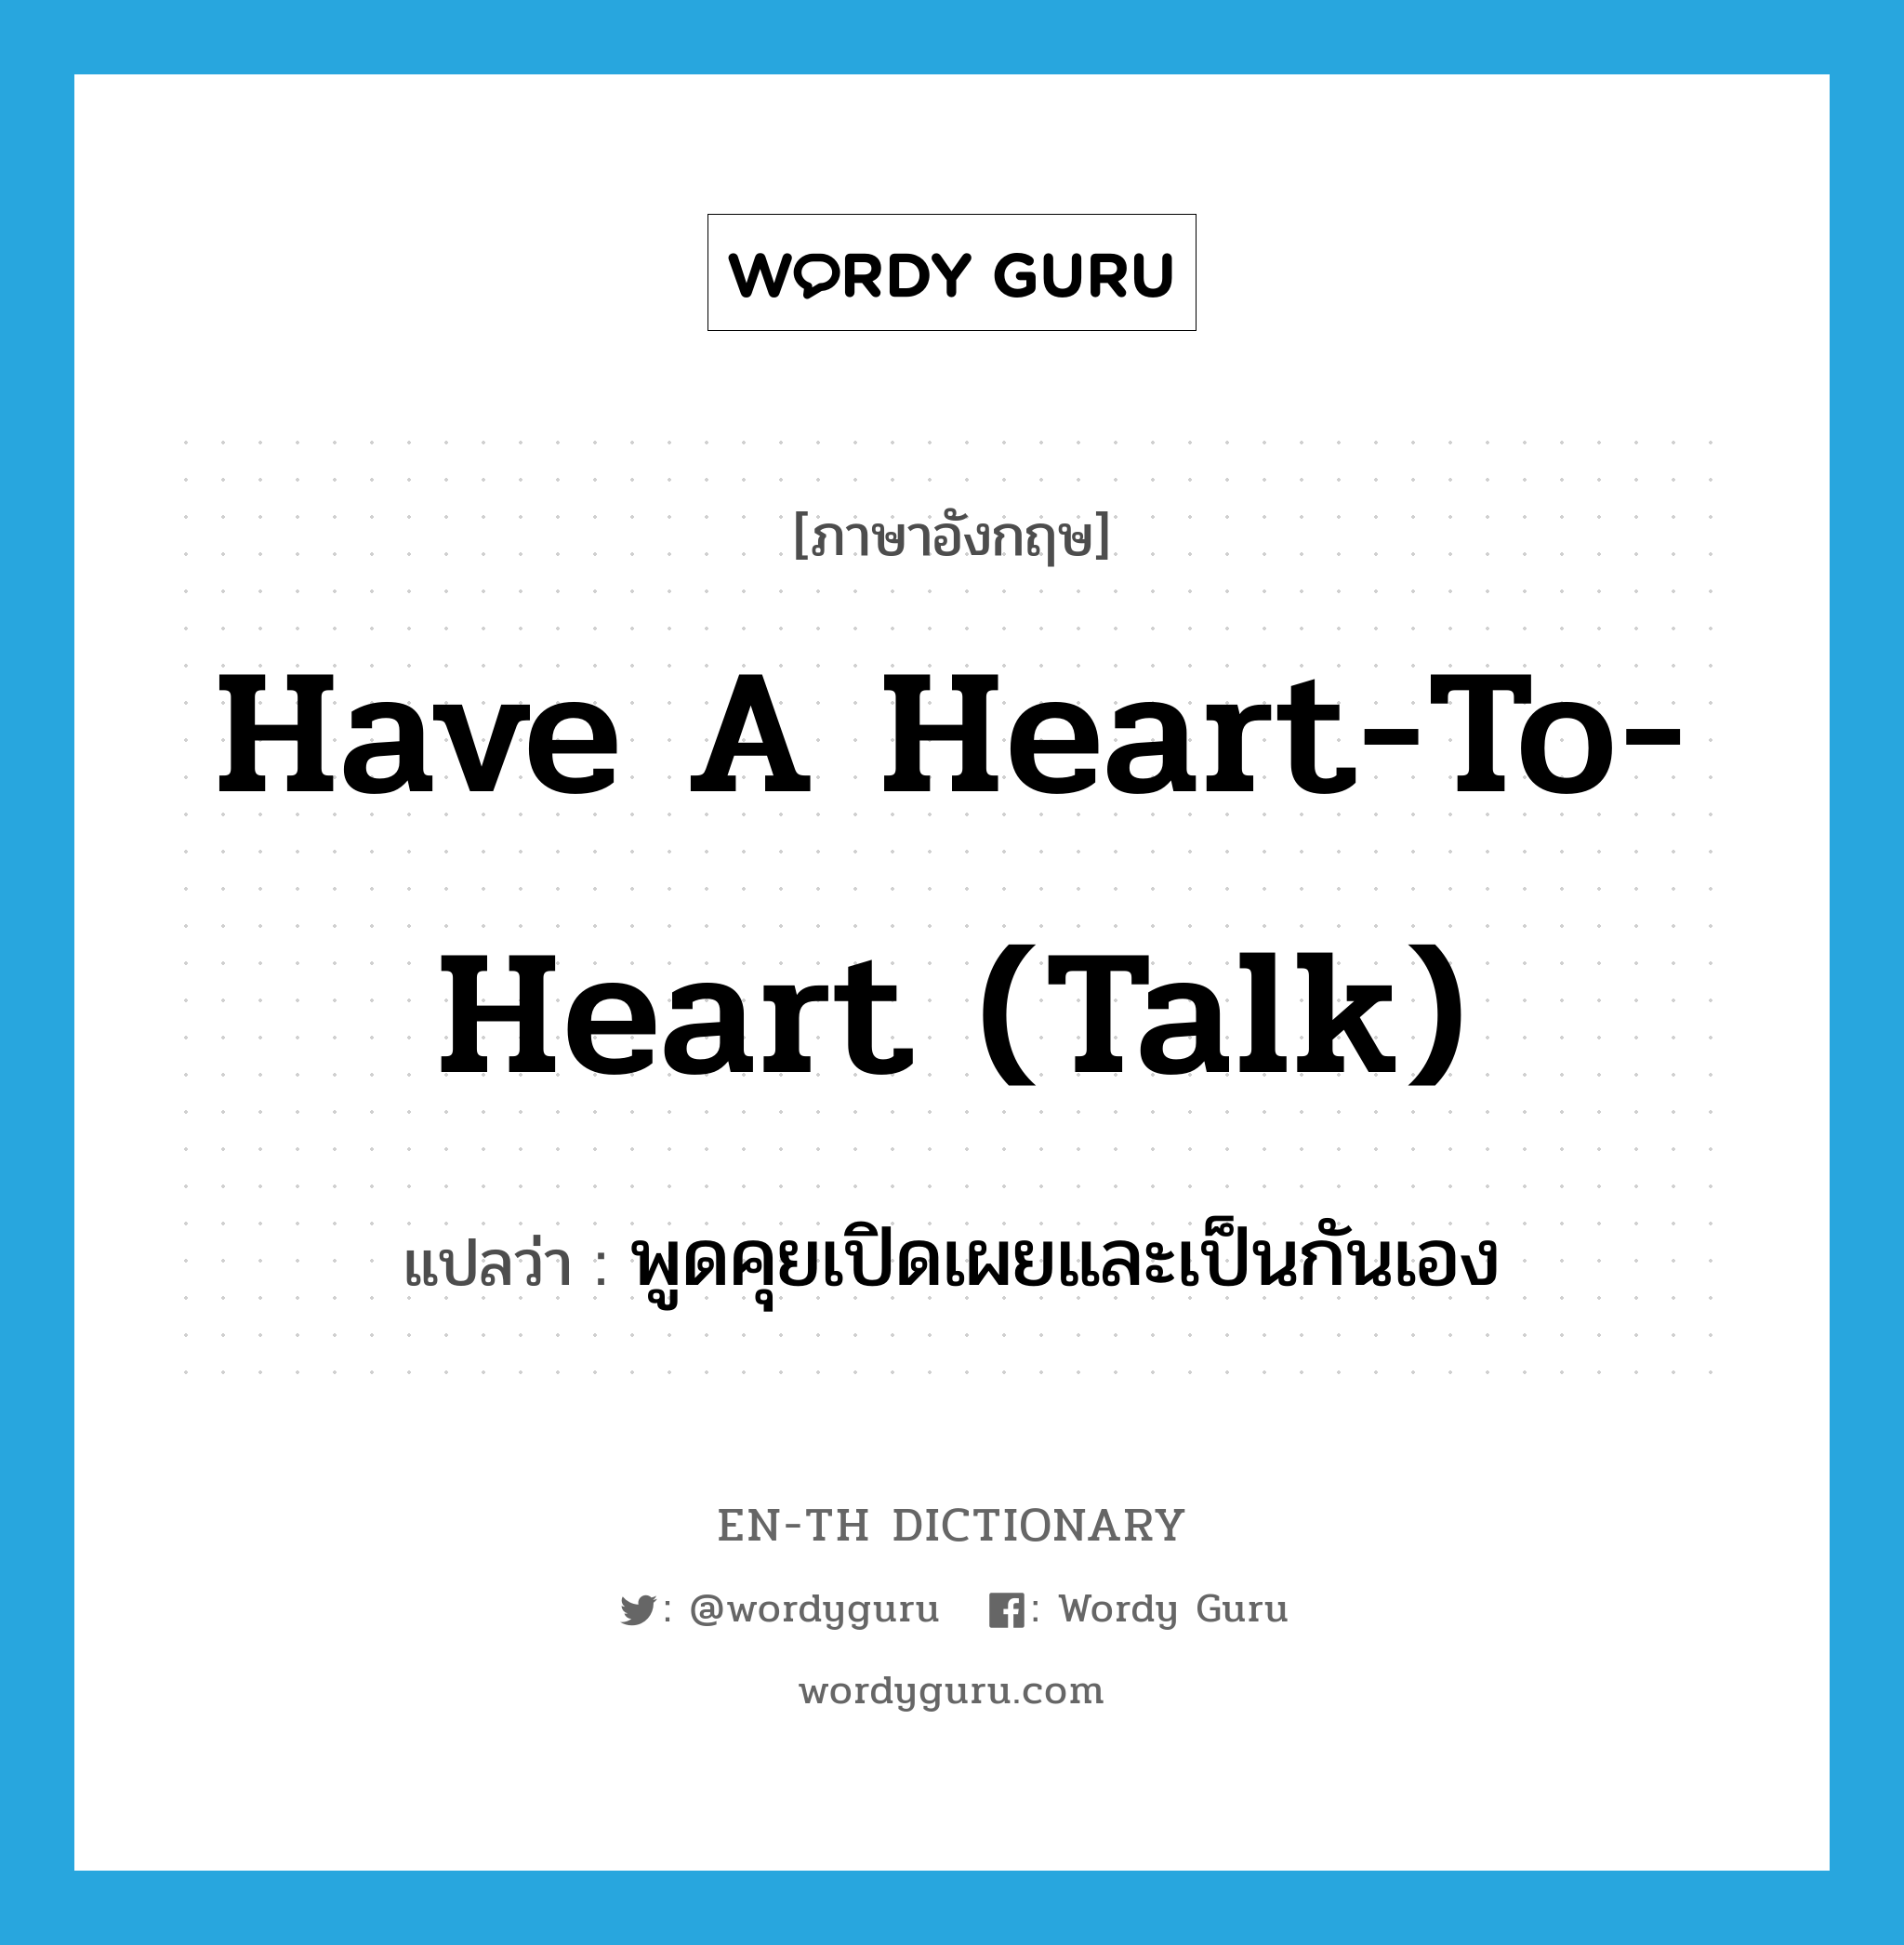 พูดคุยเปิดเผยและเป็นกันเอง ภาษาอังกฤษ?, คำศัพท์ภาษาอังกฤษ พูดคุยเปิดเผยและเป็นกันเอง แปลว่า have a heart-to-heart (talk) ประเภท IDM หมวด IDM